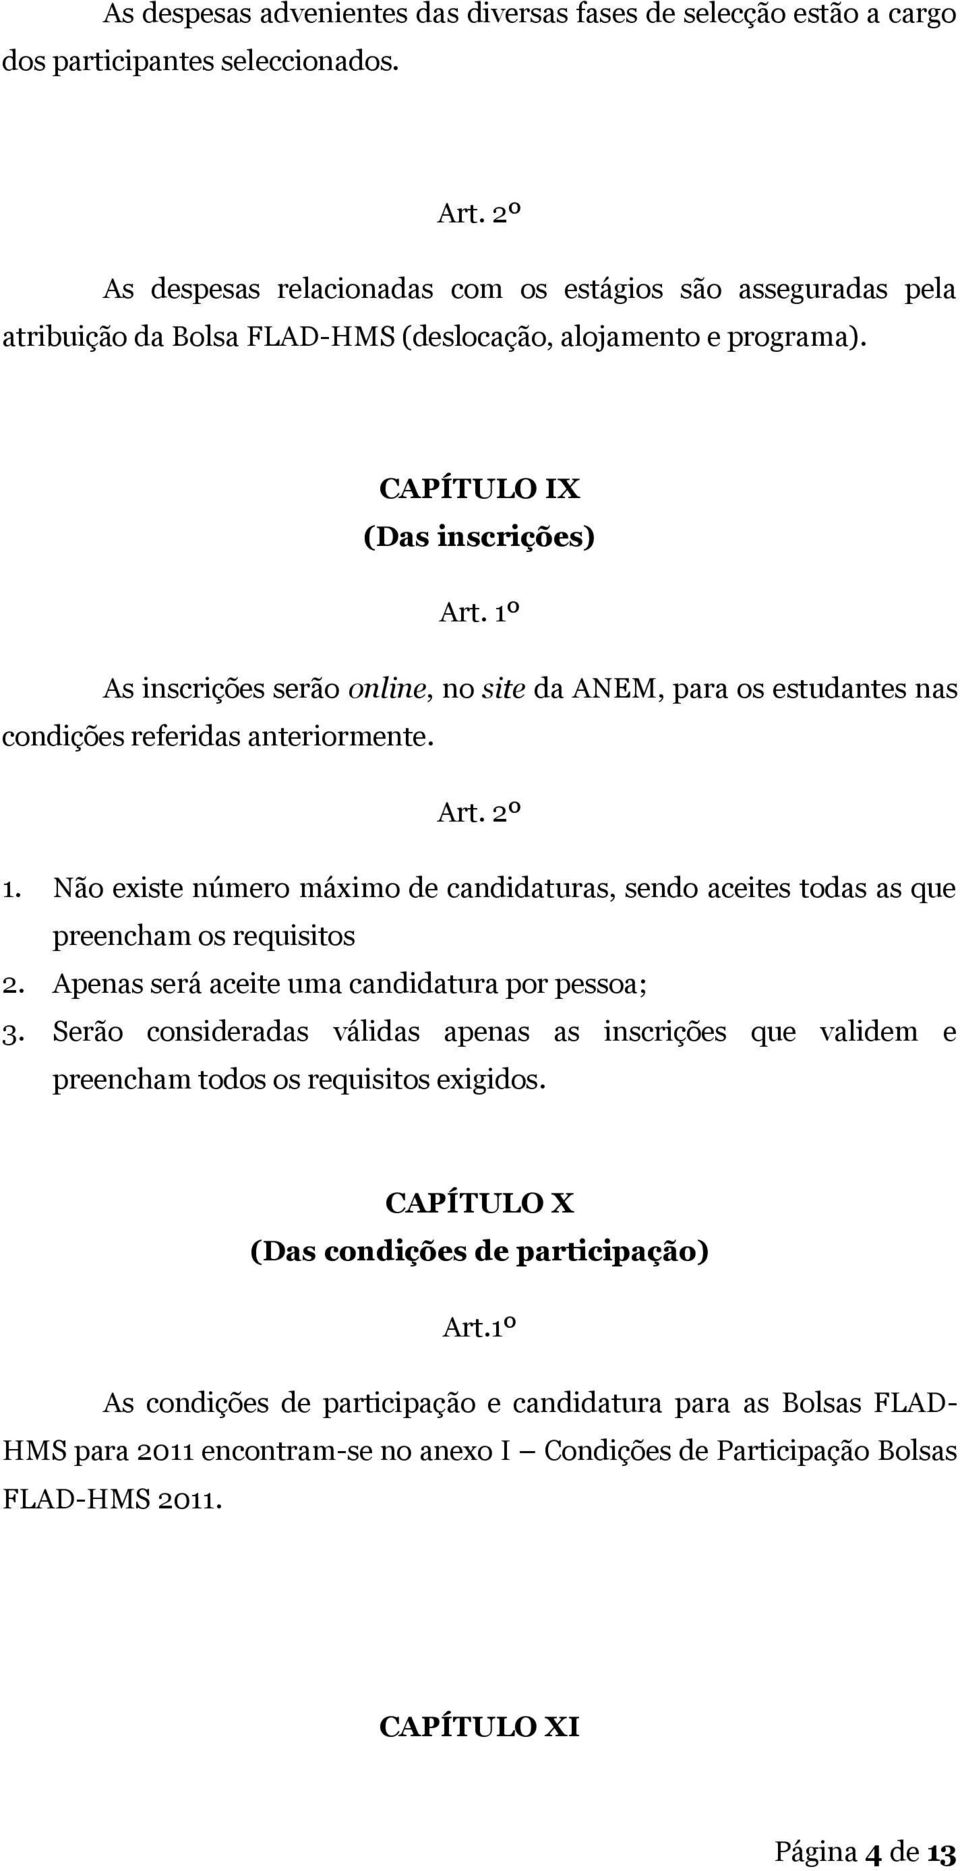 CAPÍTULO IX (Das inscrições) As inscrições serão online, no site da ANEM, para os estudantes nas condições referidas anteriormente. Art. 2º 1.